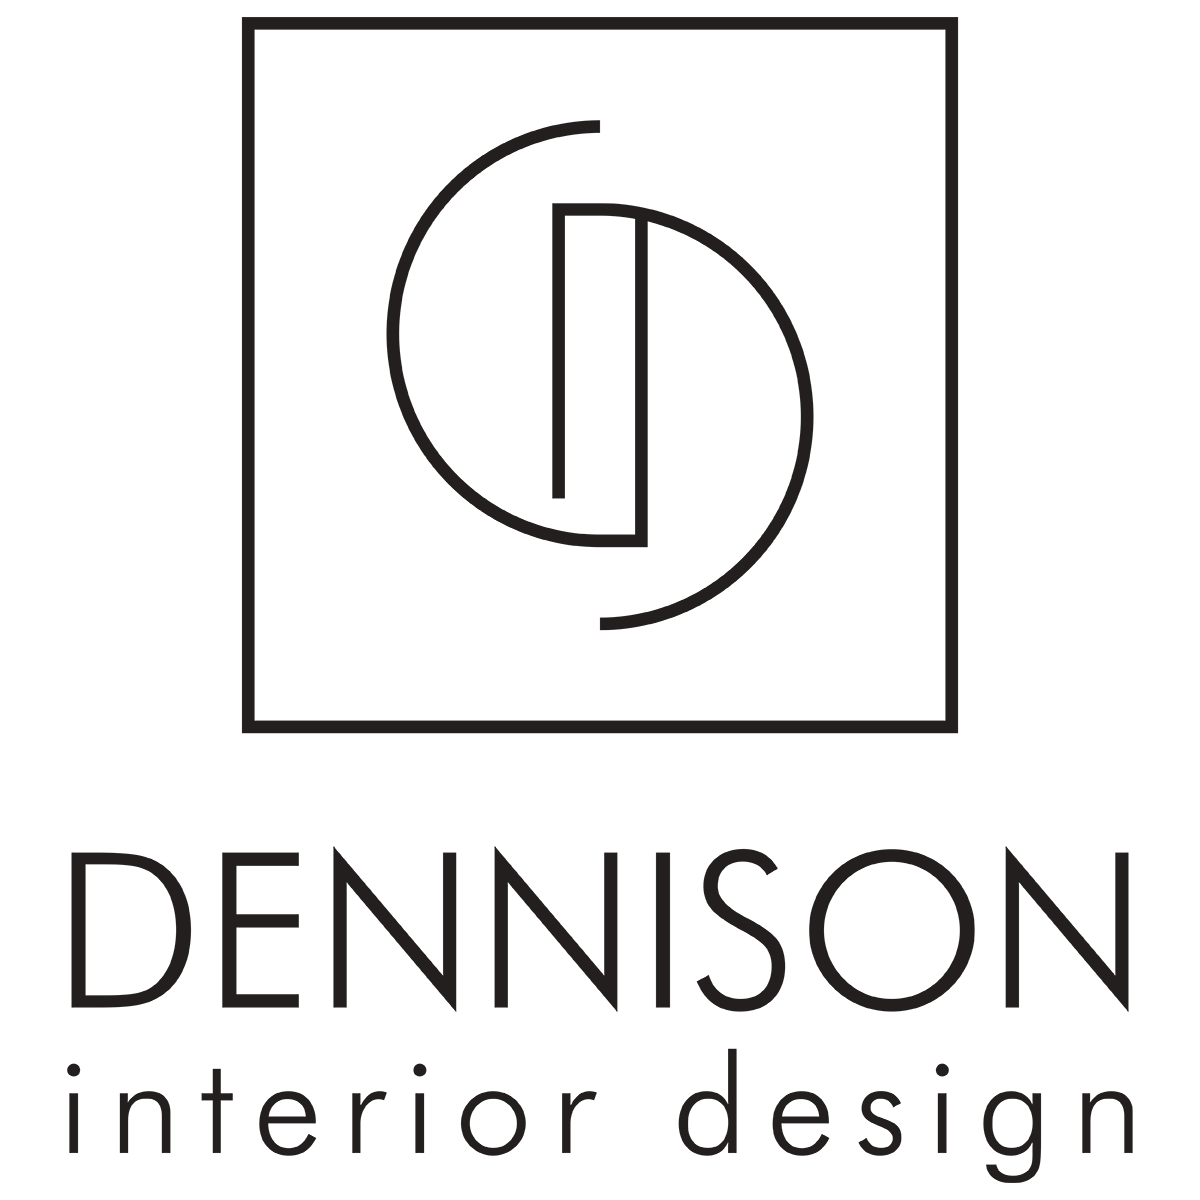 Dennison Interior Design